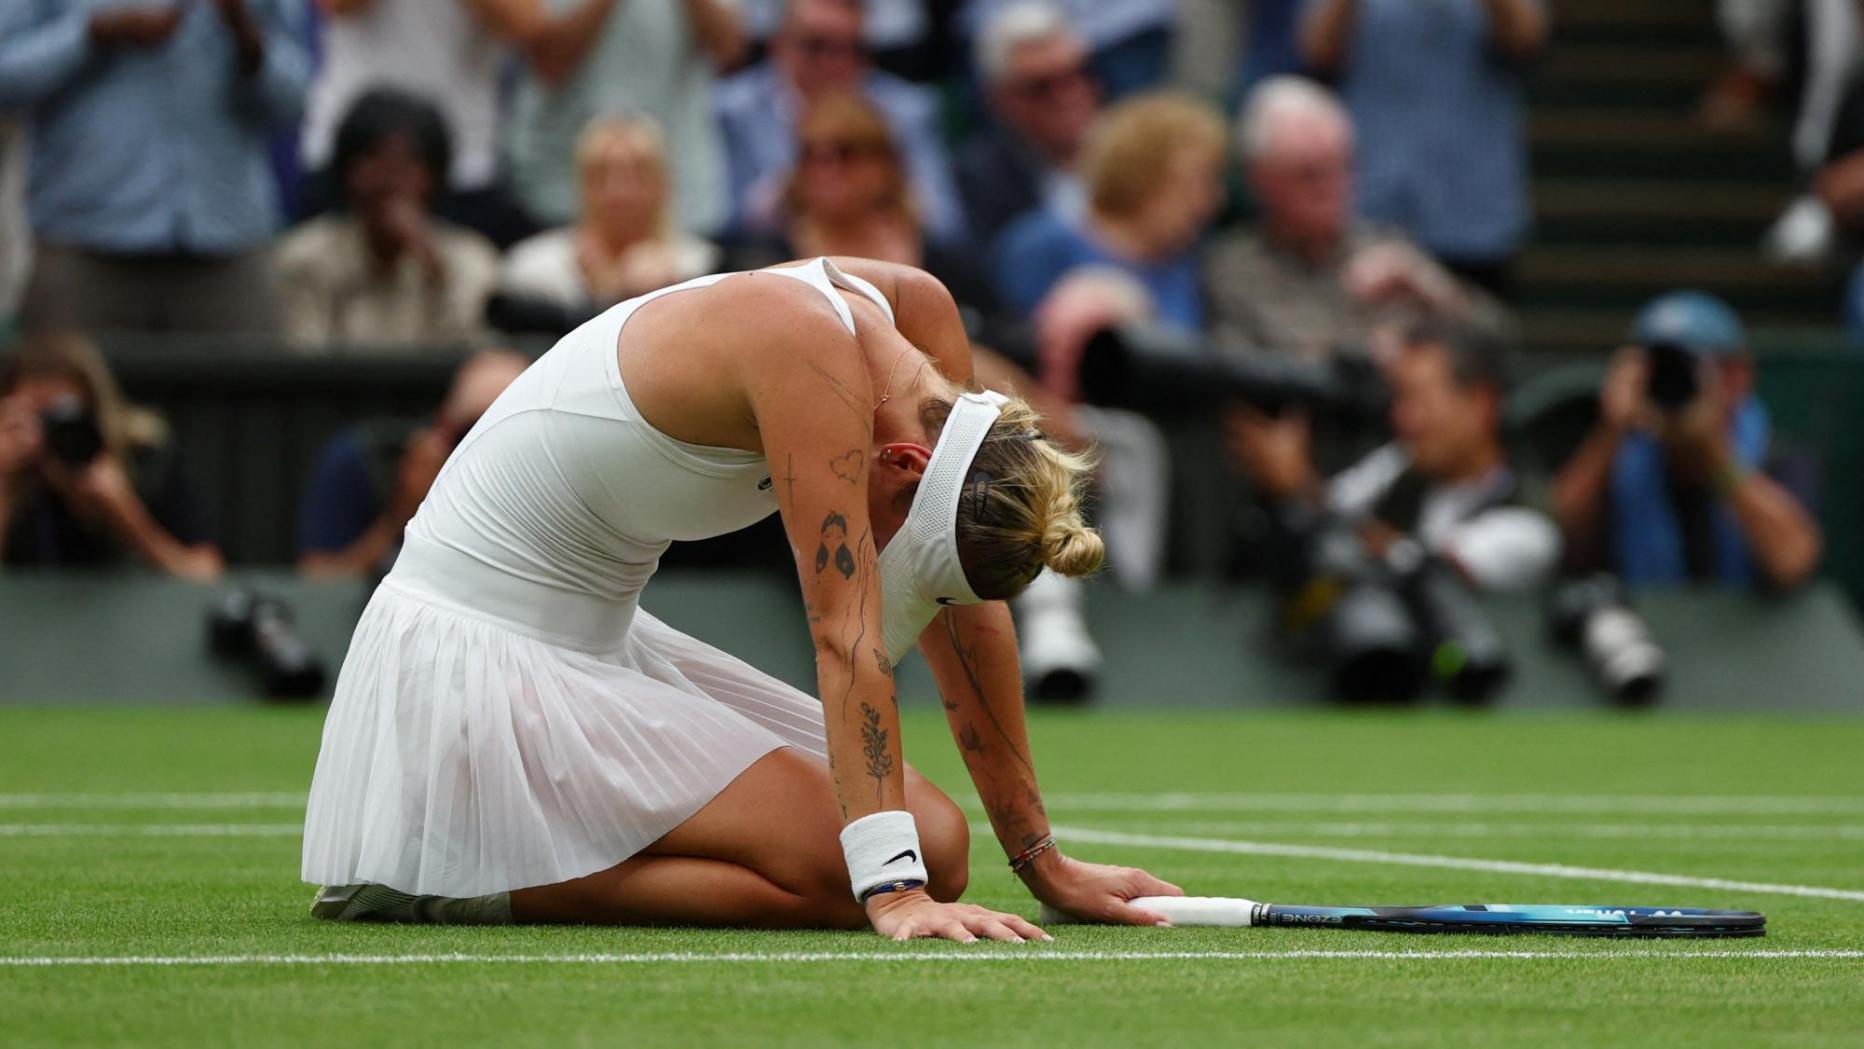 Historischer Erfolg Vondrousova mit Titel-Sensation in Wimbledon kurier.at